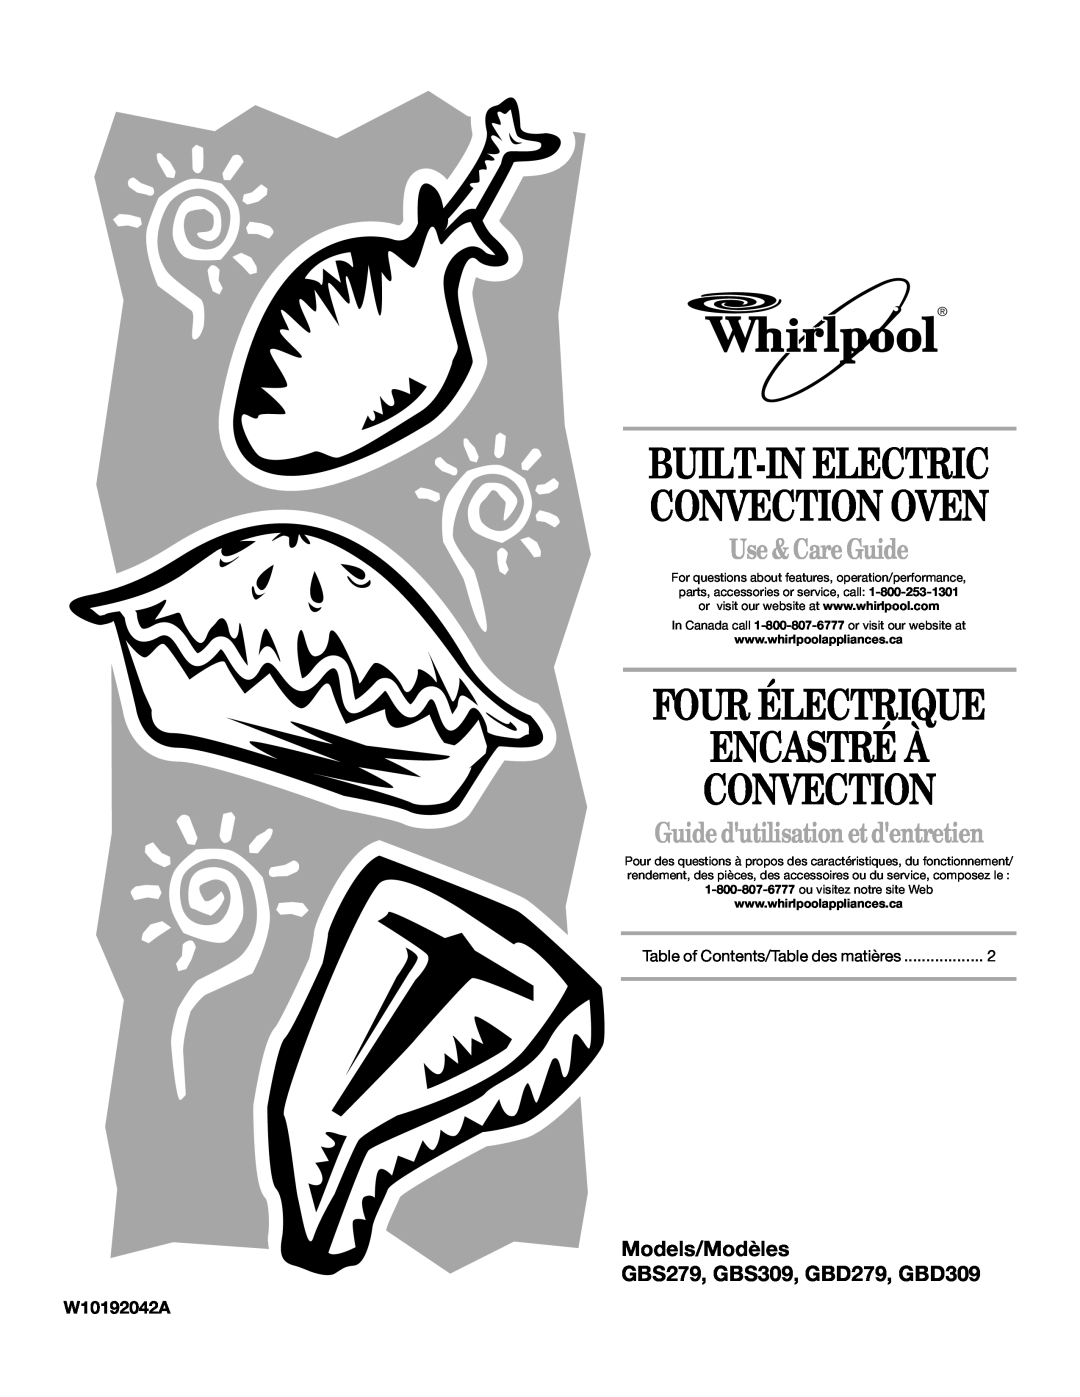 Whirlpool GBS309, GBS279PVB manual W10192042A, Built-In Electric Convection Oven, Four Électrique Encastré À Convection 